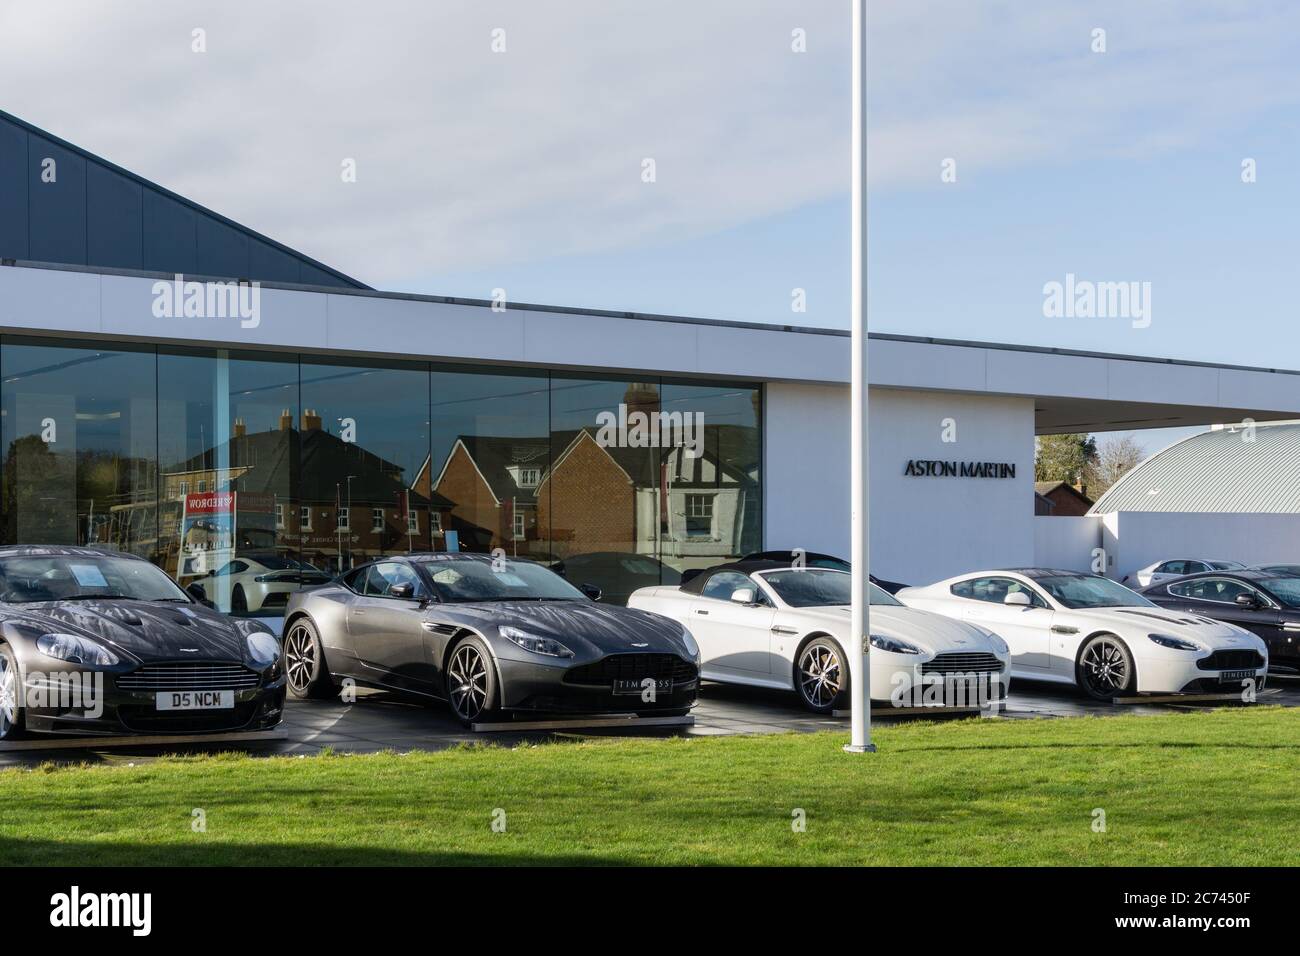 Le vetture si sono schierate sul piazzale dello showroom Aston Martin, Newport Pagnell, Buckinghamshire, Regno Unito Foto Stock